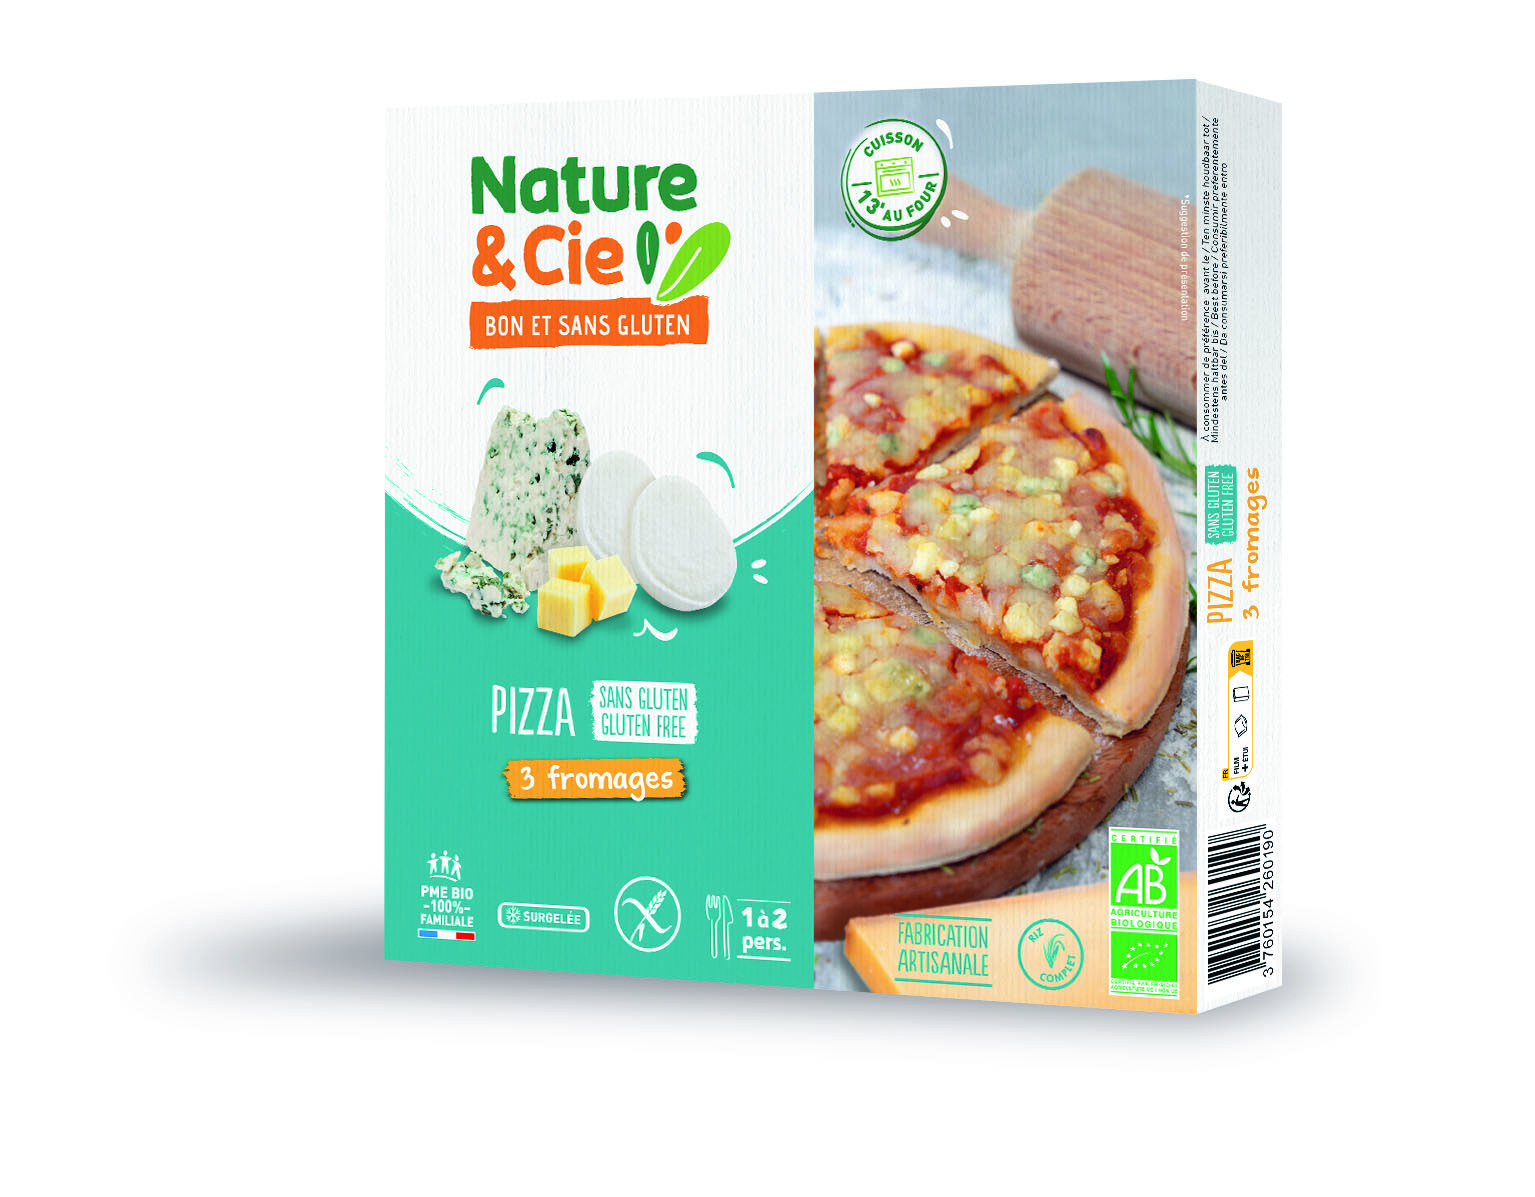 Nature & Cie Pizza 3 kazen glutenvrij & bio 250g